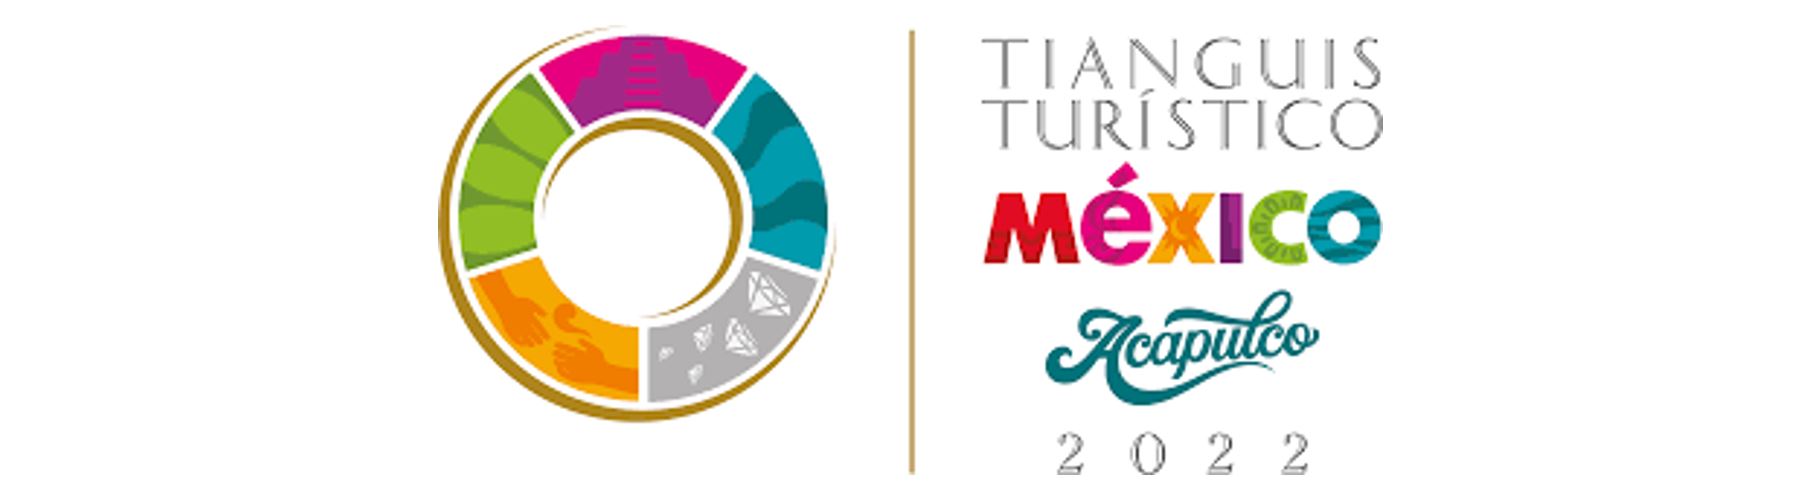 We are on course for Tianguis Turístico México 2022